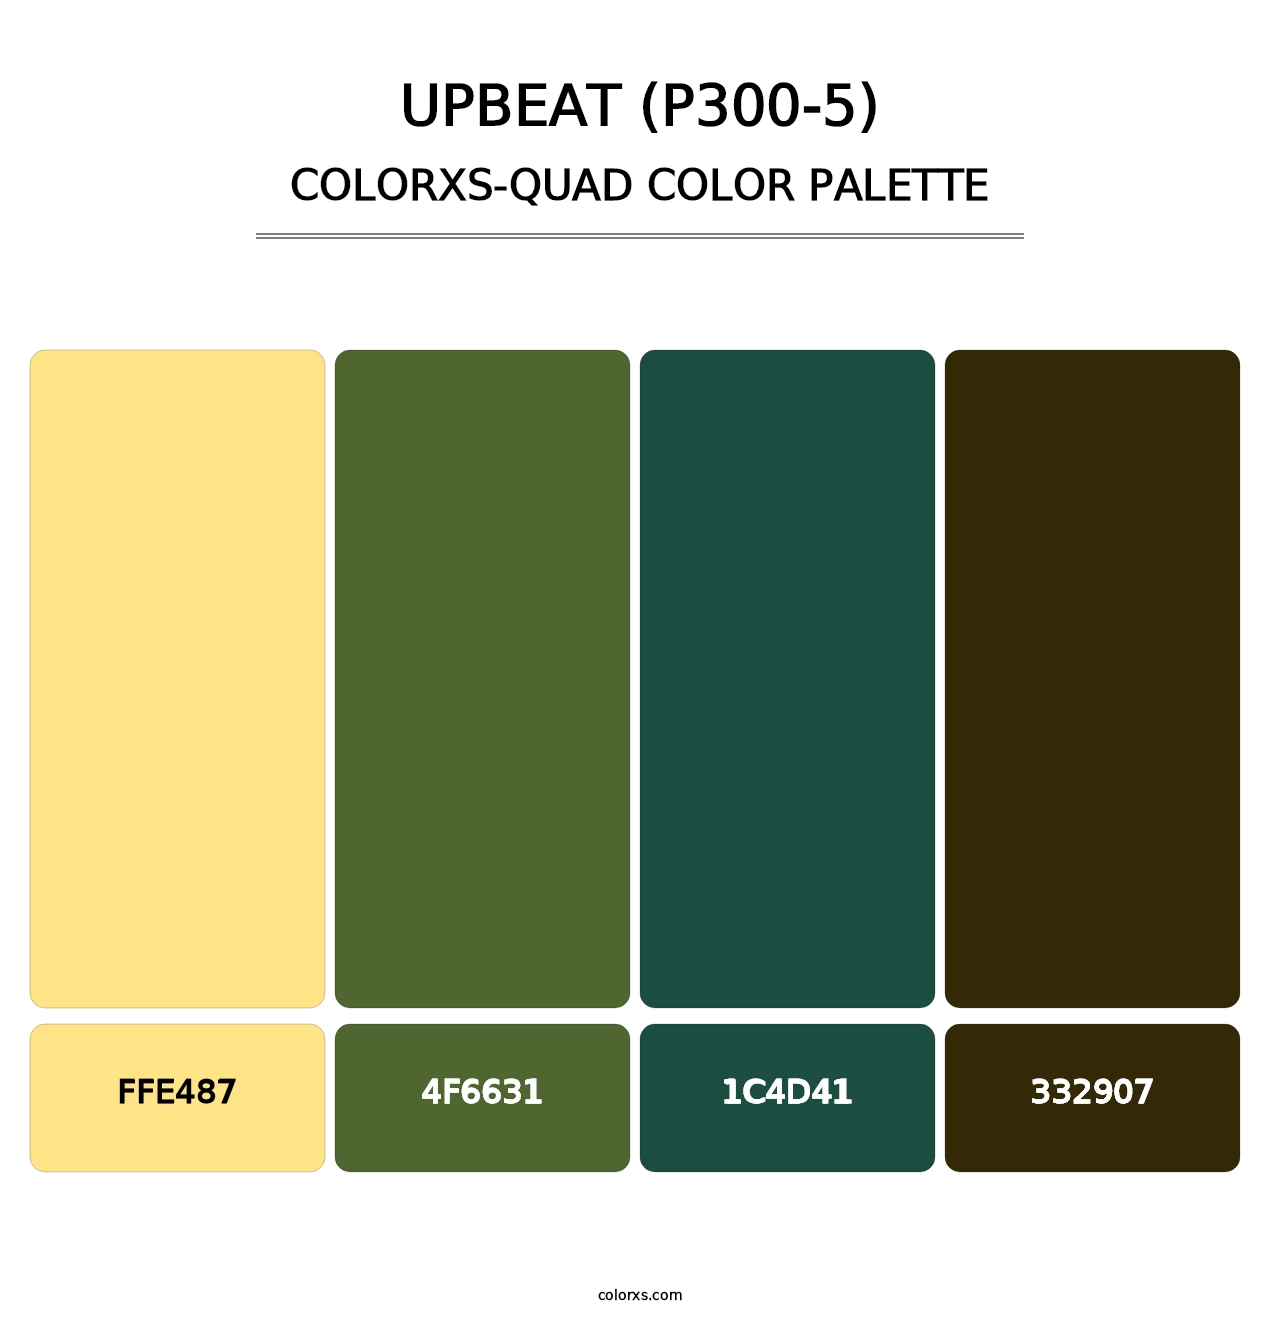 Upbeat (P300-5) - Colorxs Quad Palette